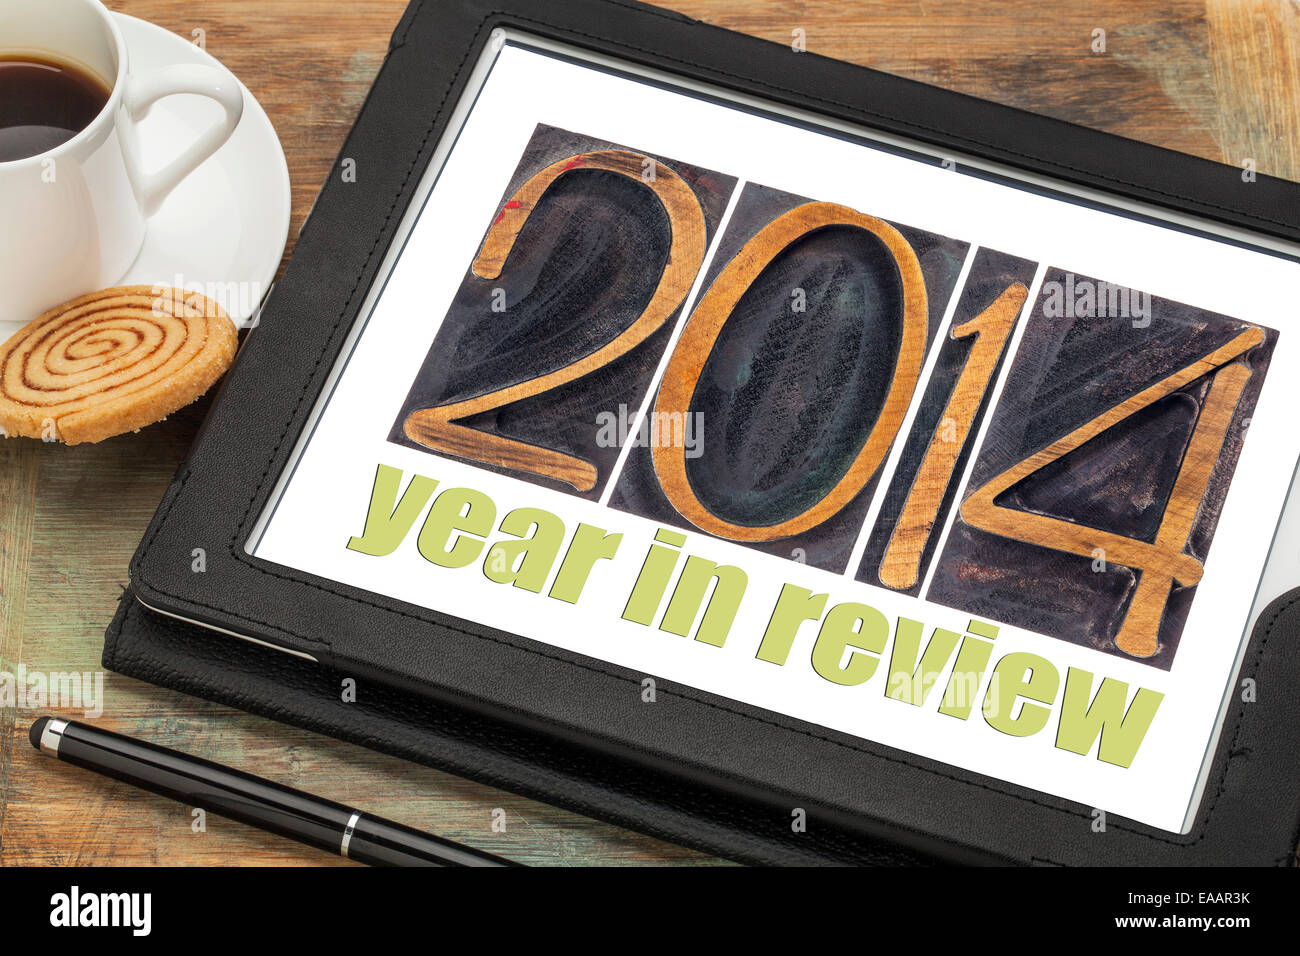 2014-Jahr im Rückblick - Text im Buchdruck Holzart auf einem digitalen Tablet mit Tasse Kaffee Stockfoto